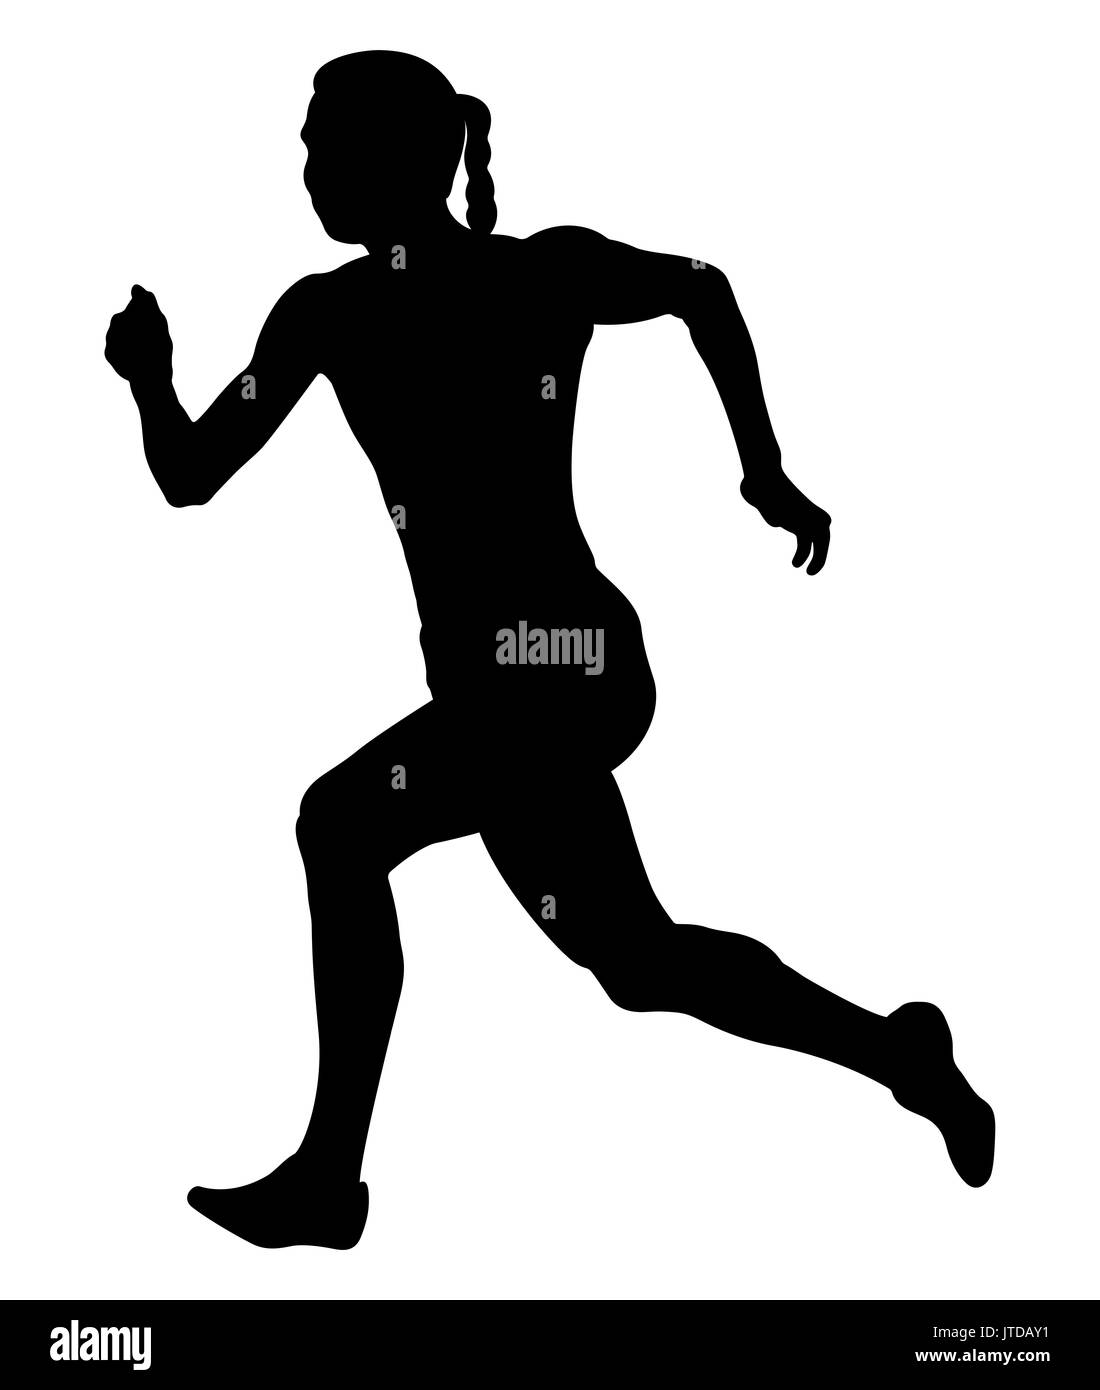 girl sprinter athlete fast running black silhouette Stock Photo